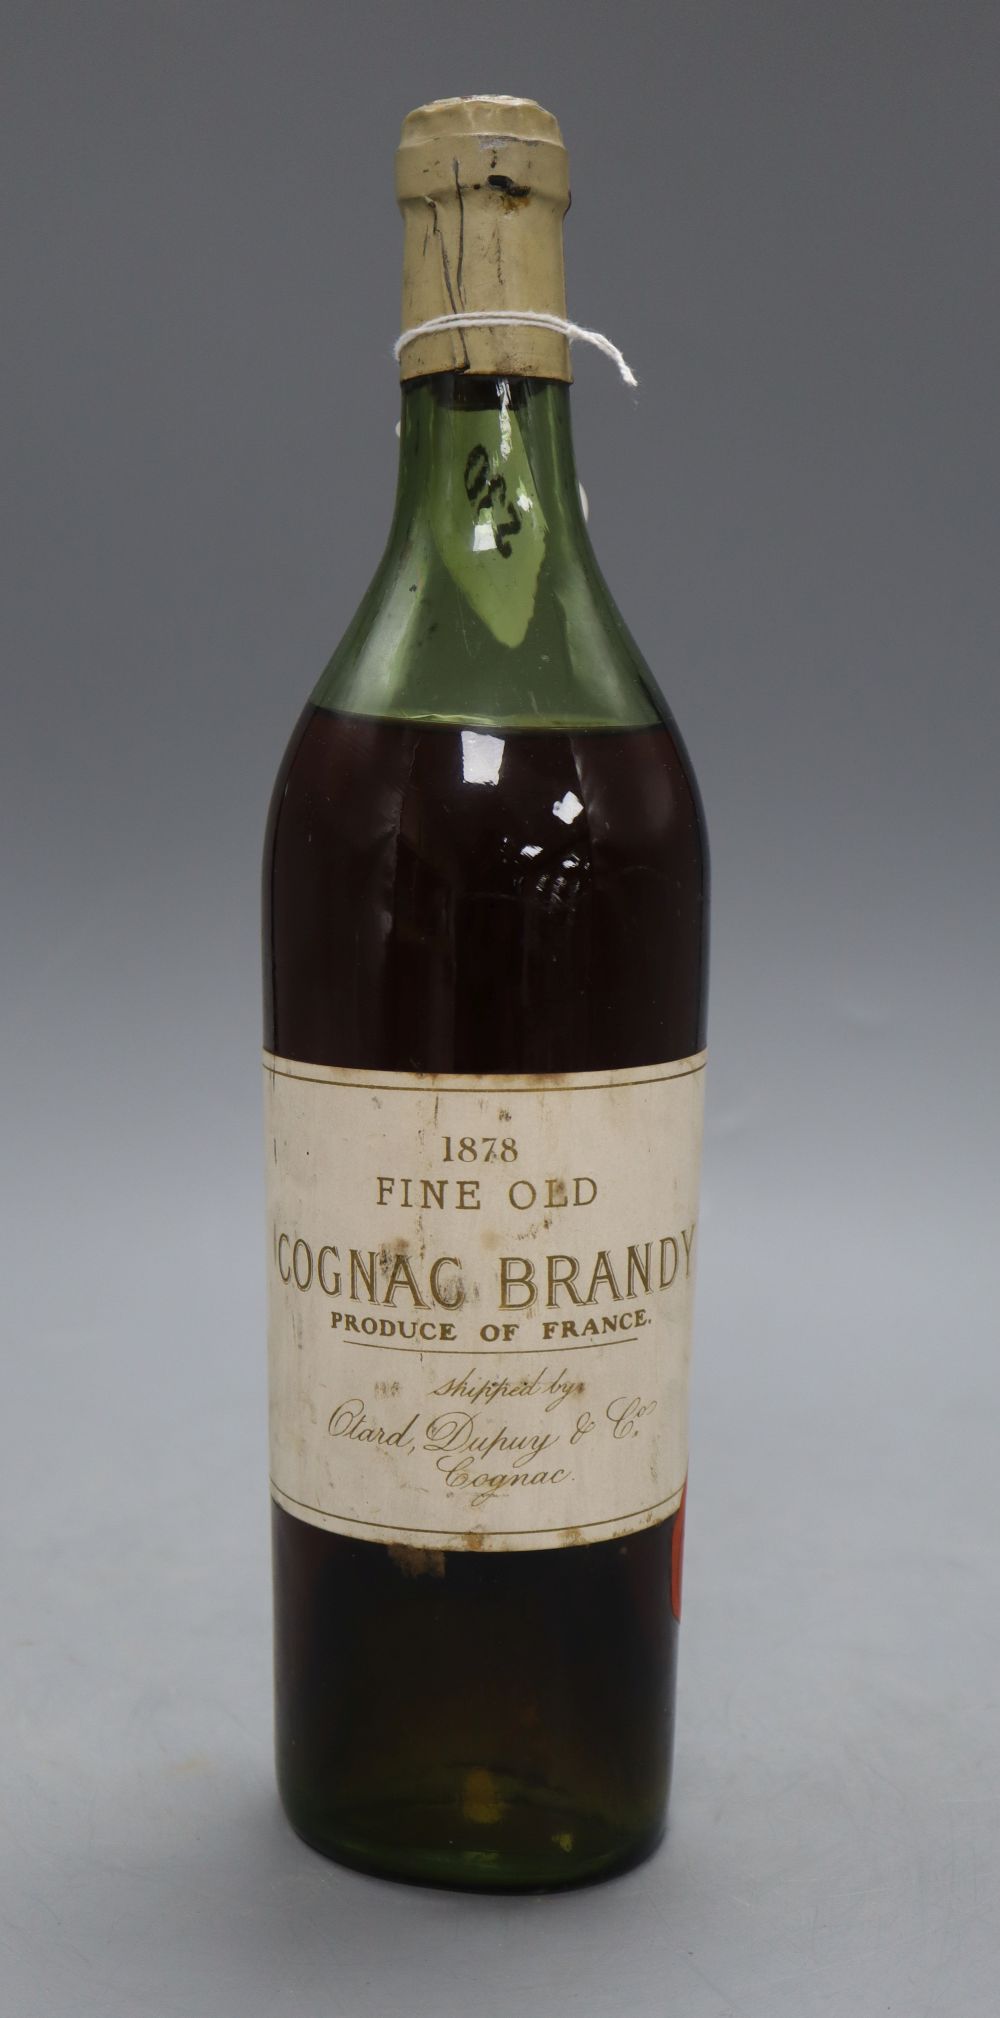 A bottle of 1878 Fine Old Cognac Brandy